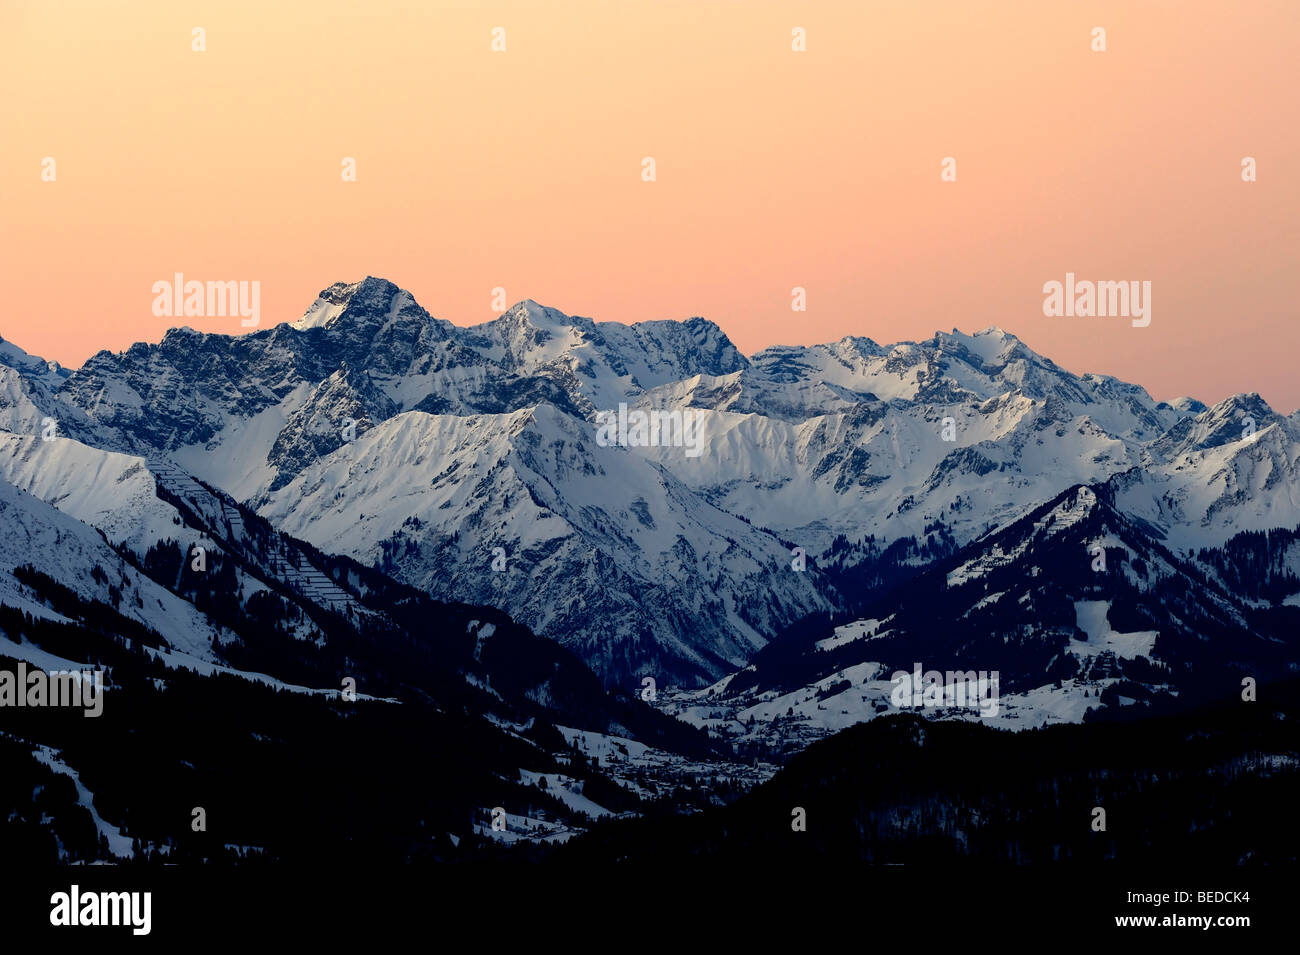 Vue panoramique sur les sommets des montagnes, au coucher du soleil, Alpes Allgaeu, Tyrol, Autriche, Europe Banque D'Images